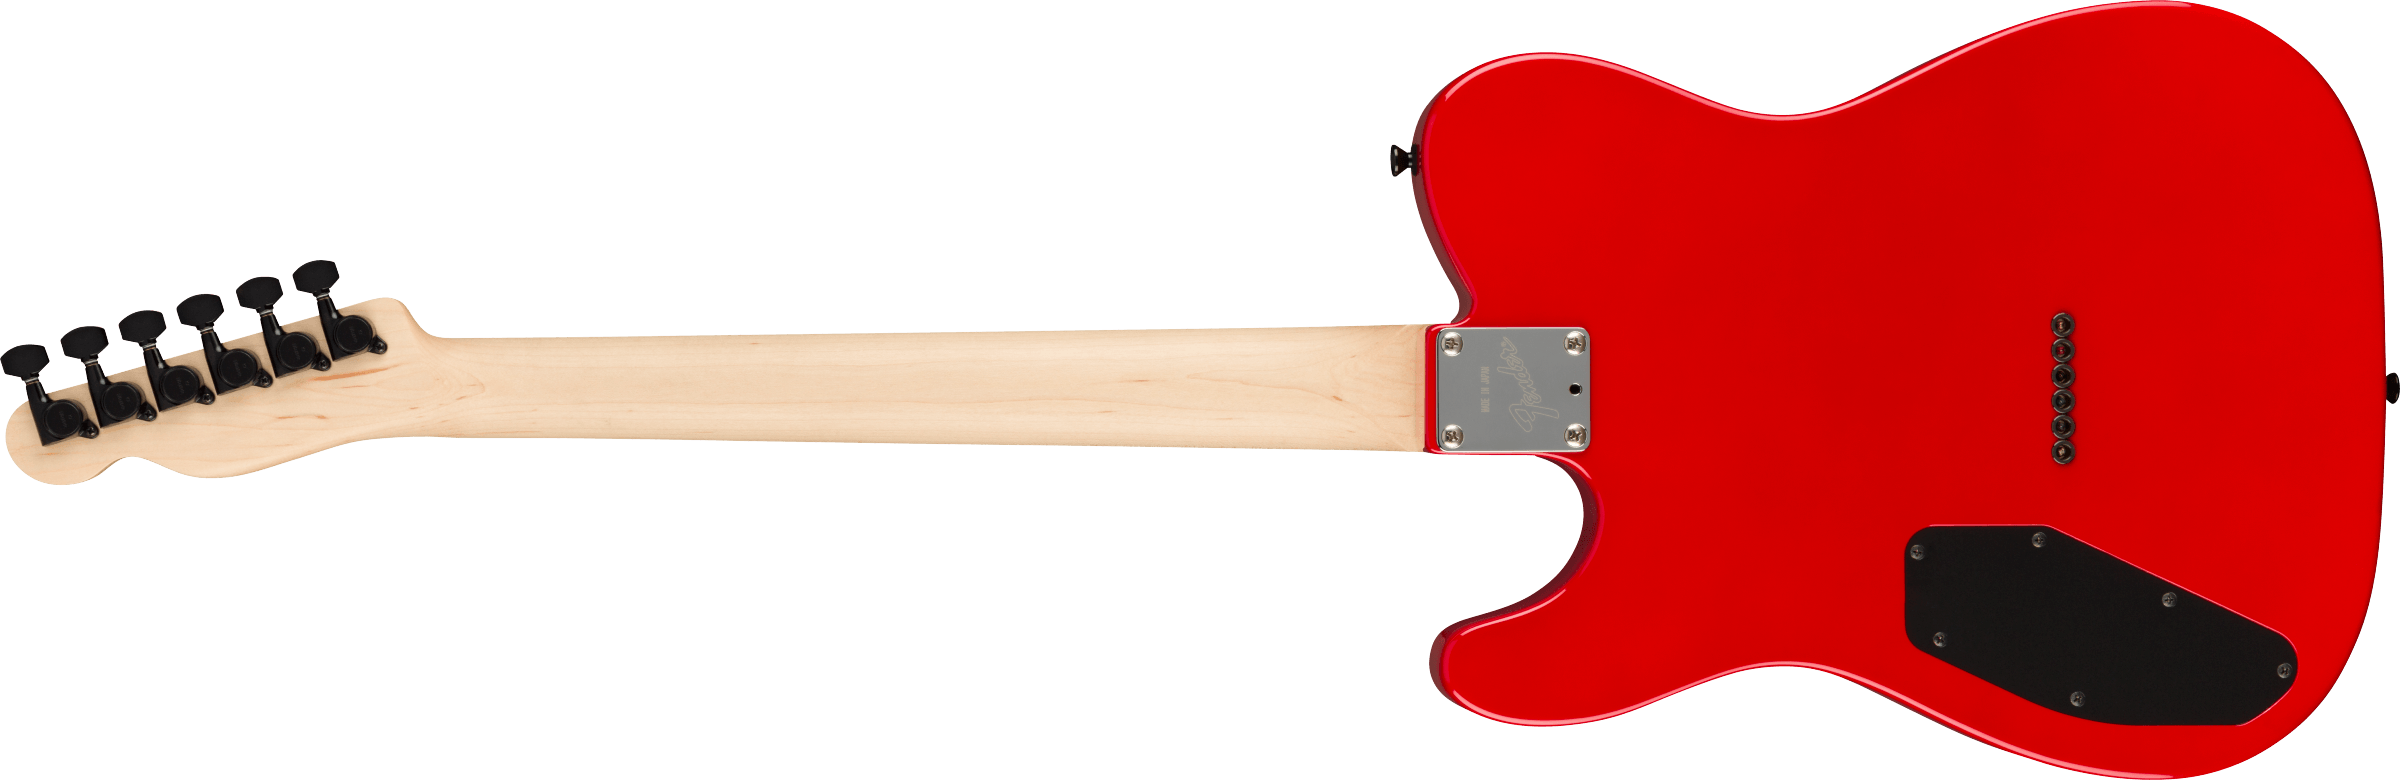 Fender Tele Boxer Hh Jap Ht Rw +housse - Torino Red - Guitarra eléctrica con forma de tel - Variation 1